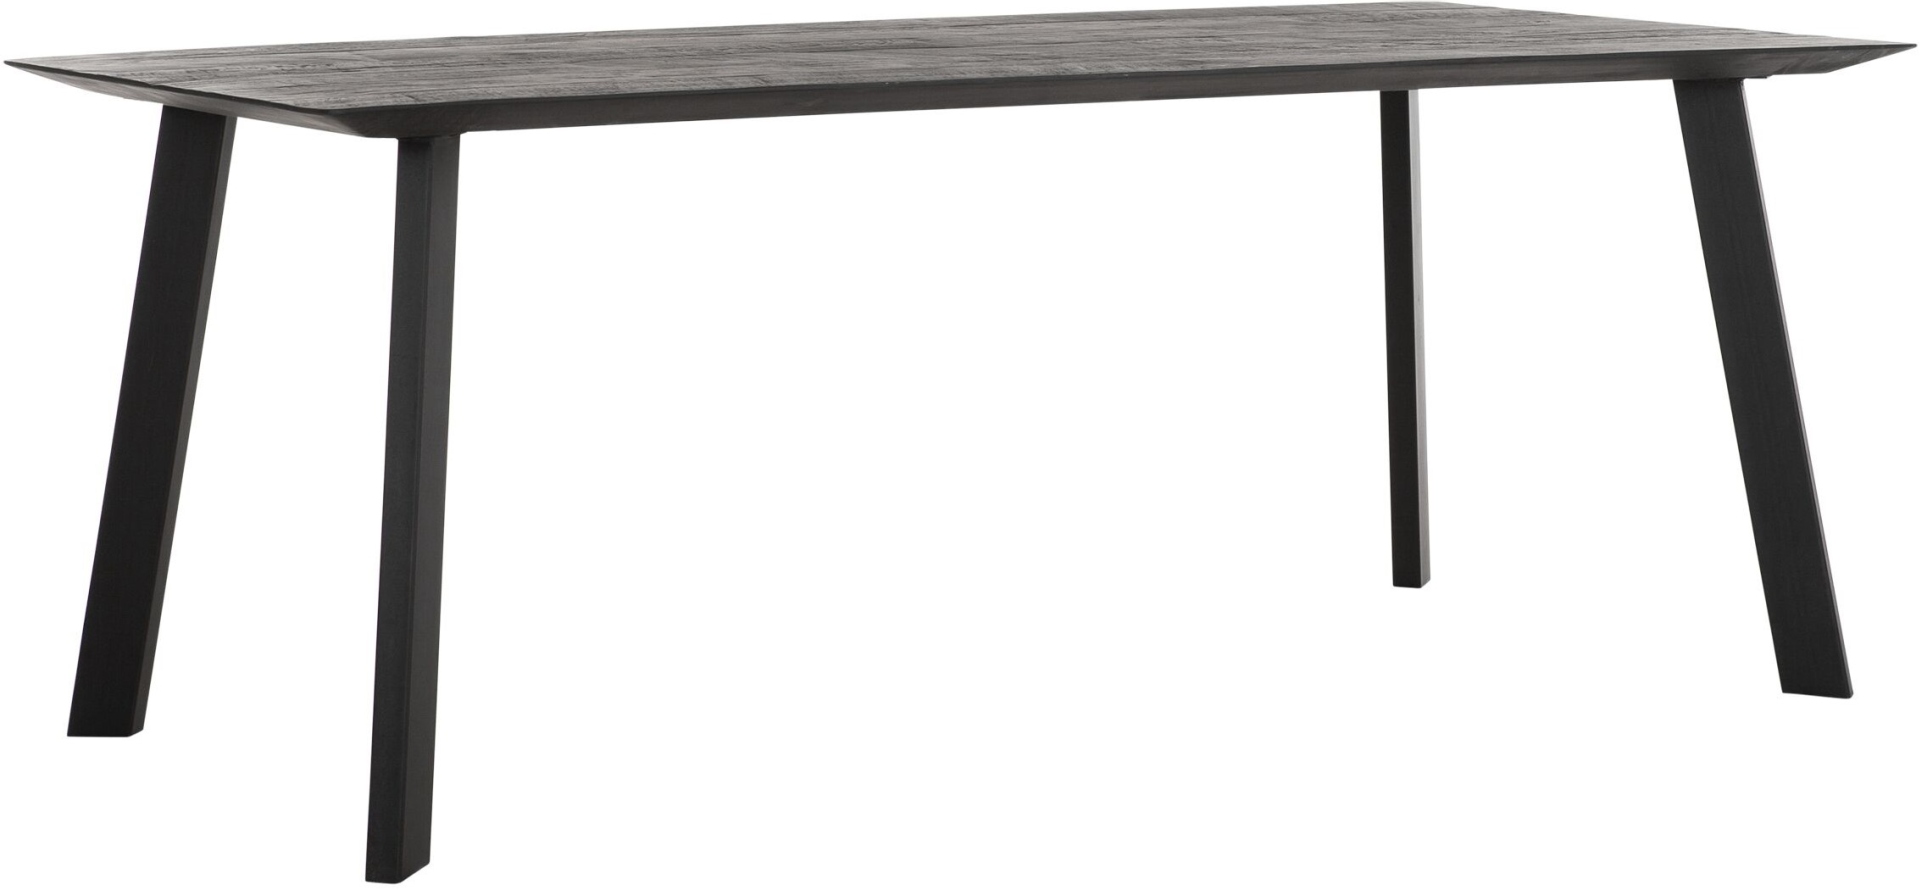 Der Esstisch Shapes überzeugt mit seinem modernem aber auch massivem Design. Gefertigt wurde der Tisch aus recyceltem Teakholz, welches einen schwarzen Farbton besitzt. Das Gestell ist aus Metall und ist Schwarz. Der Tisch hat eine Länge von 200 cm.